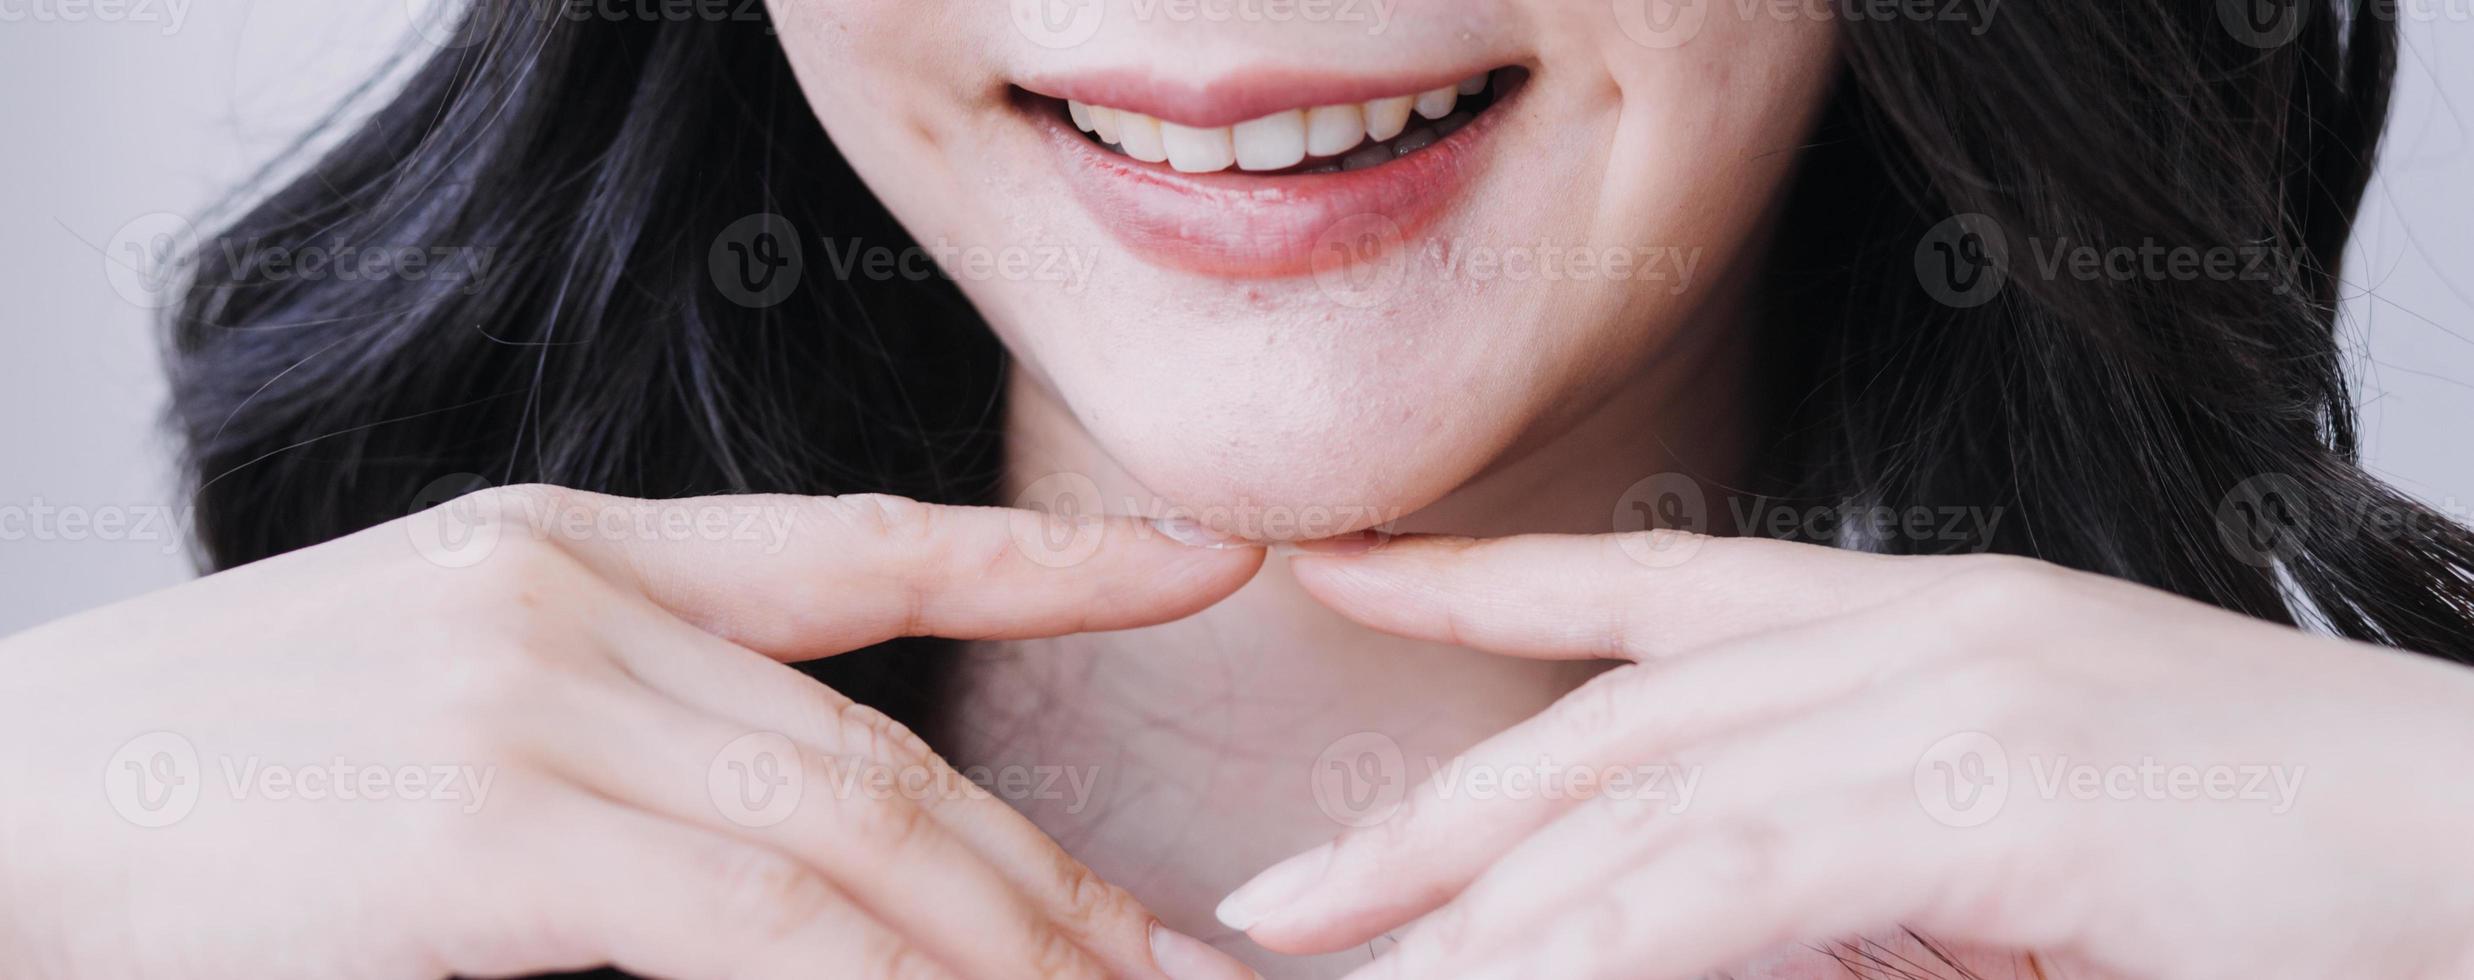 concepto de estomatología, retrato parcial de una chica con fuertes dientes blancos mirando la cámara y sonriendo, con los dedos cerca de la cara. primer plano, de, mujer joven, en, dentista, estudio, adentro foto